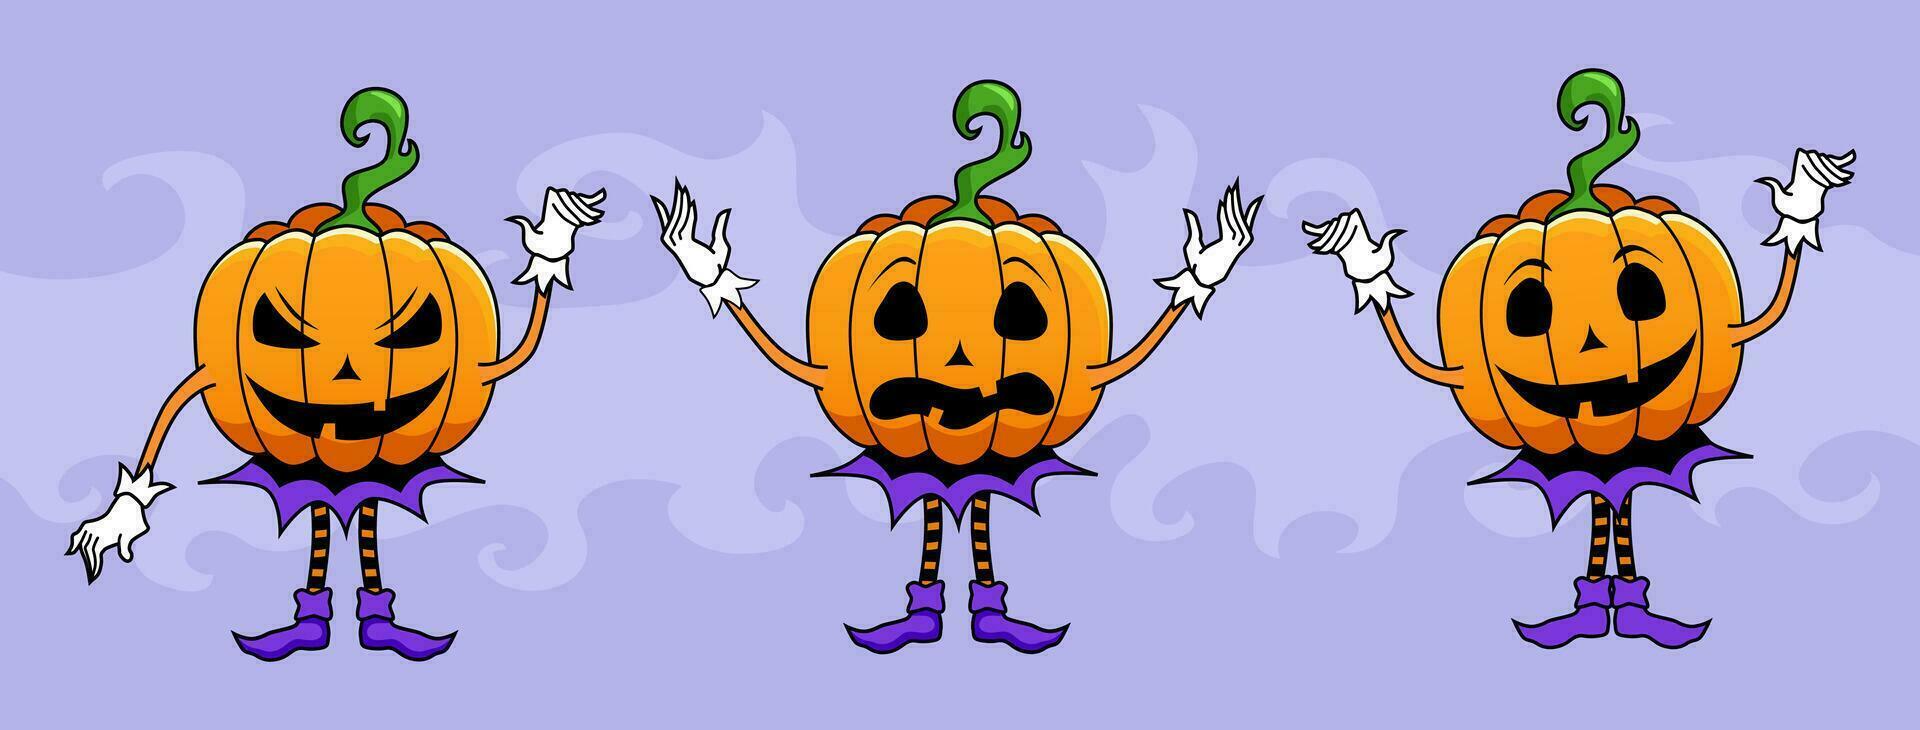 tre zucca Jack o lanterna personaggi per Halloween celebrazione striscioni, cartoline, manifesti, ragnatela decorazioni, tre personaggi con facce, mani e gambe, vettore adesivi con Halloween zucca.